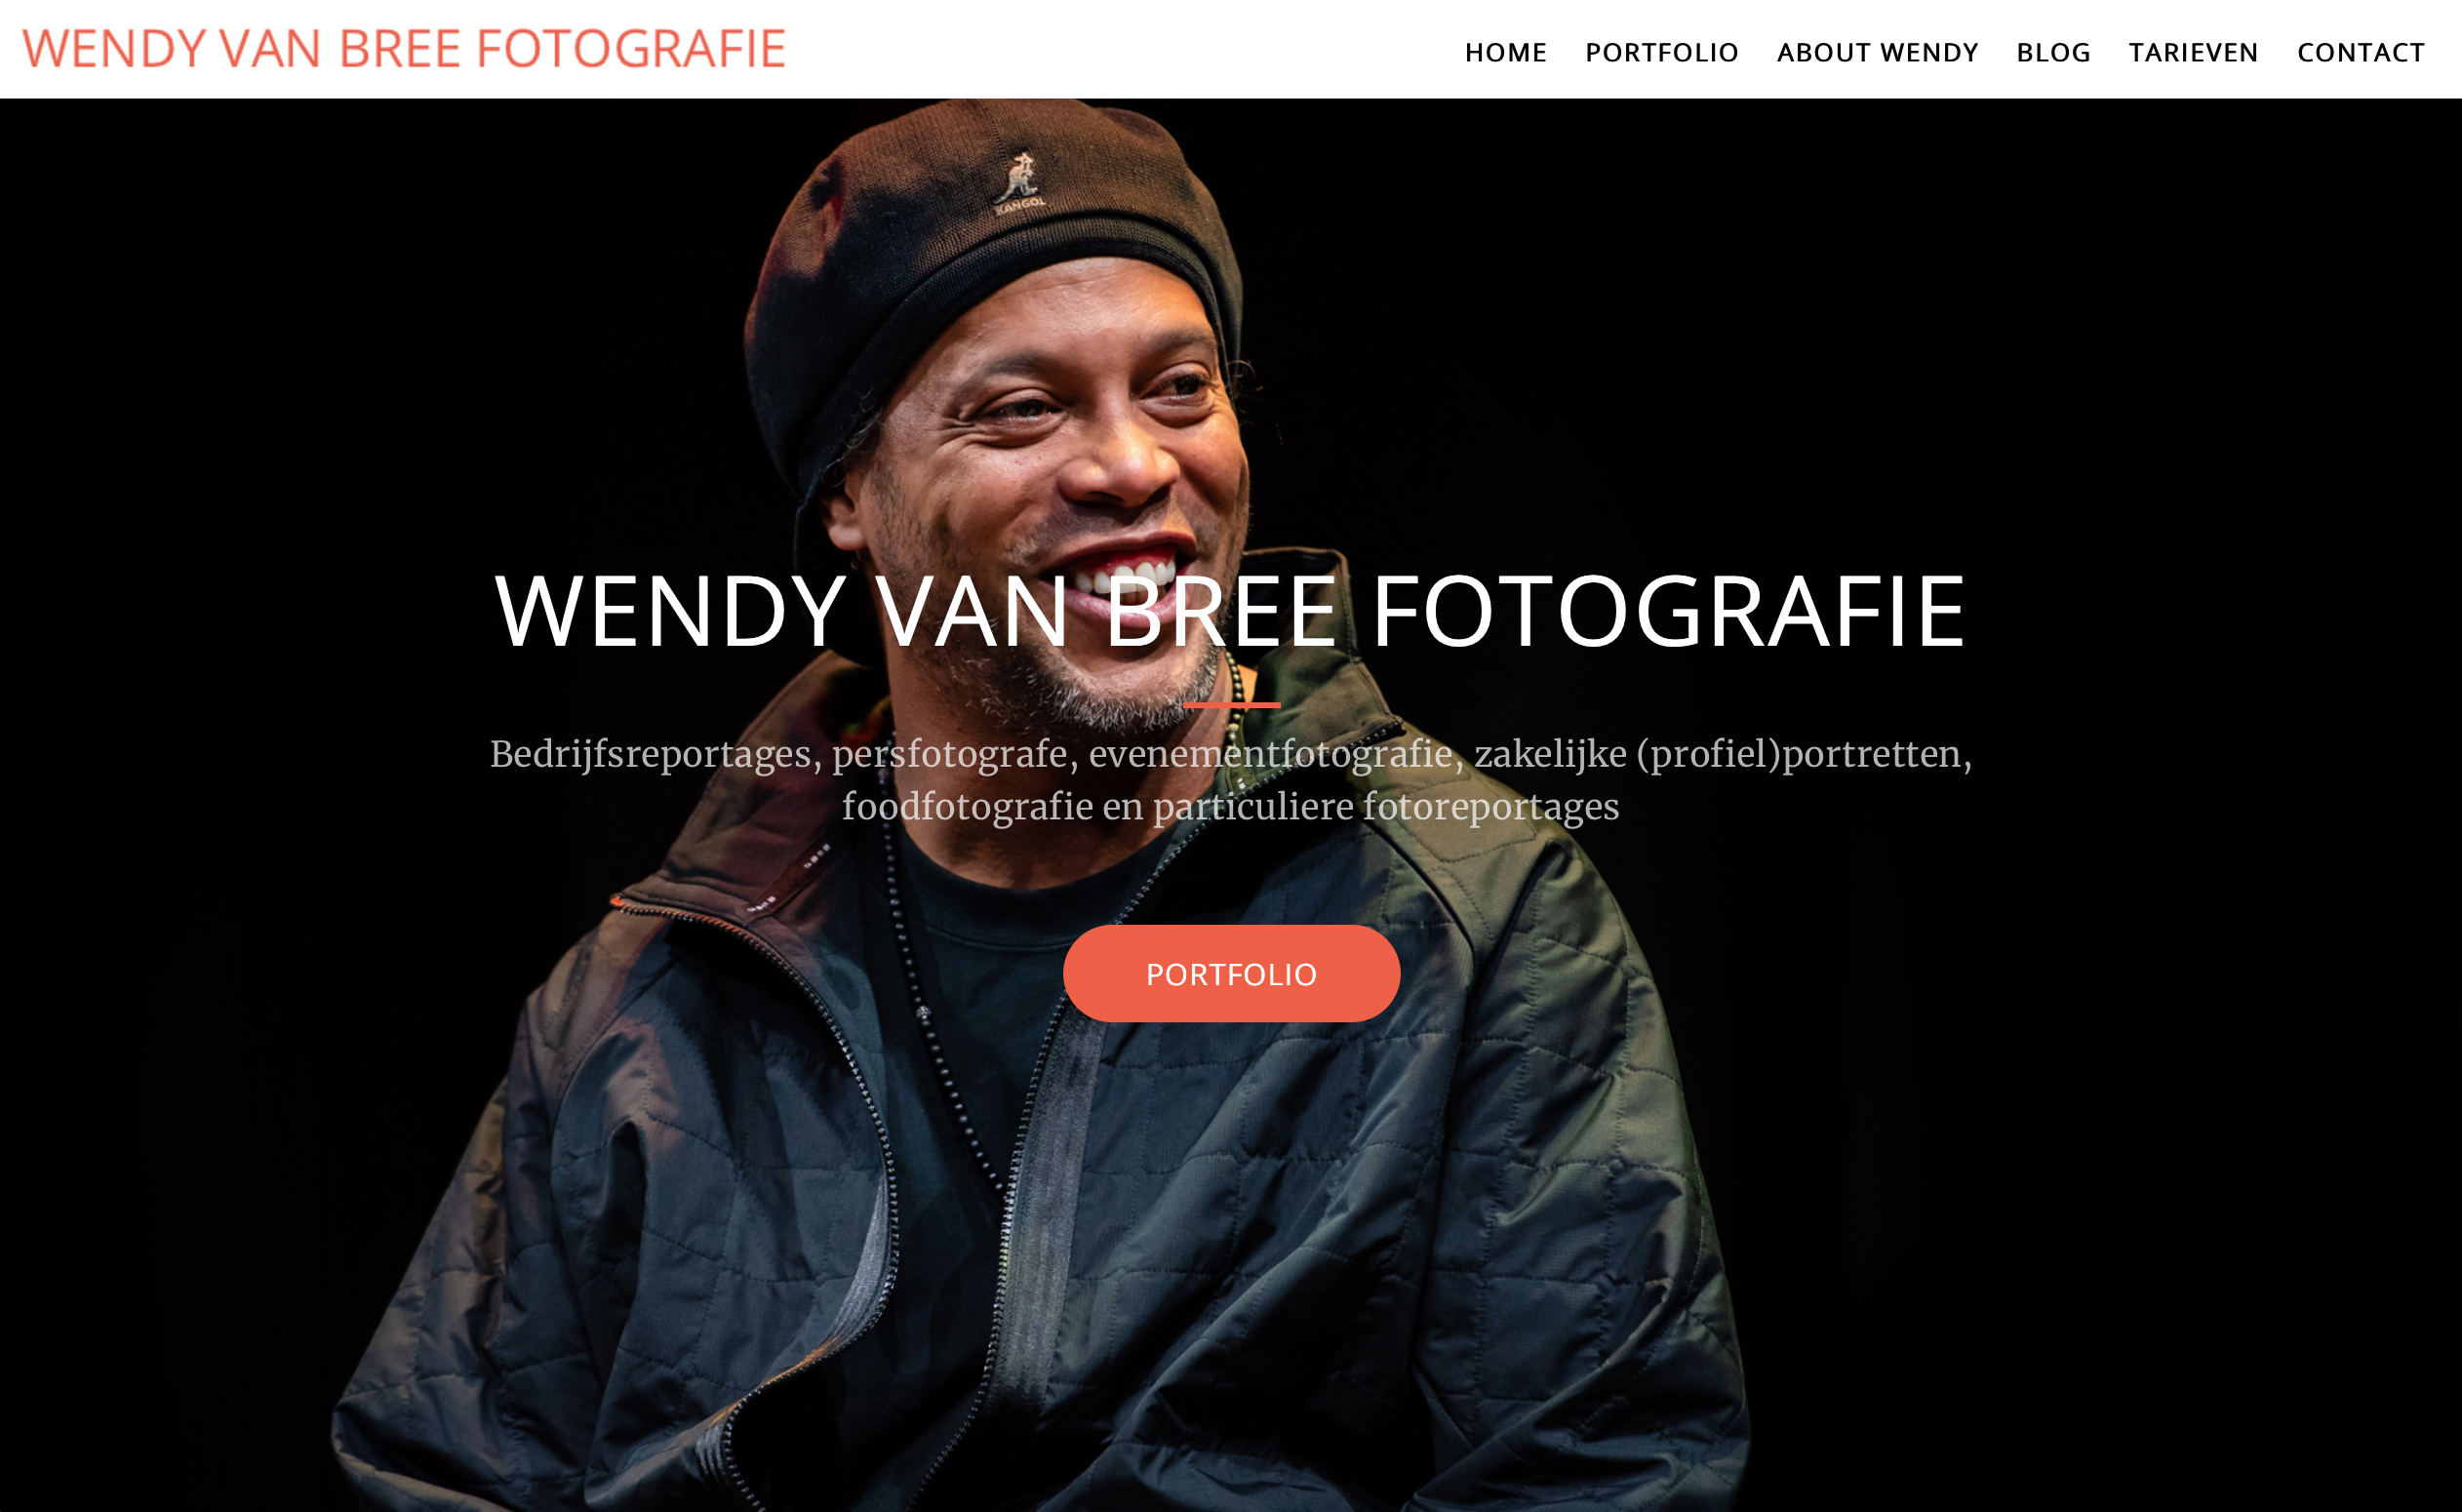 (c) Wendyvanbree-fotografie.nl